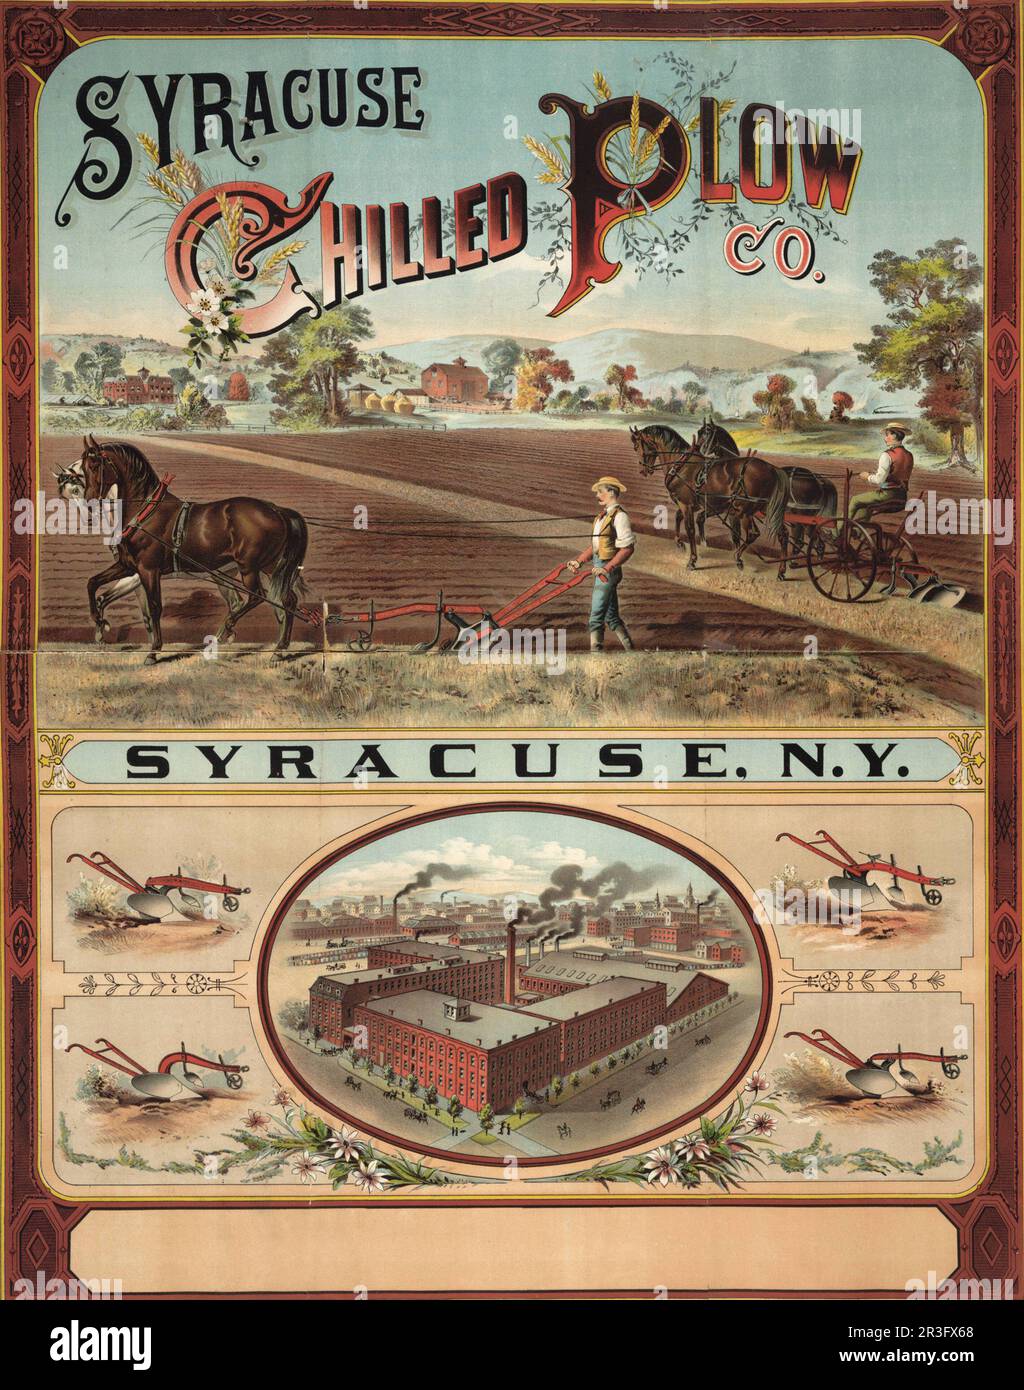 Publicité vintage pour Syracuse Chilled Plough Company. Banque D'Images